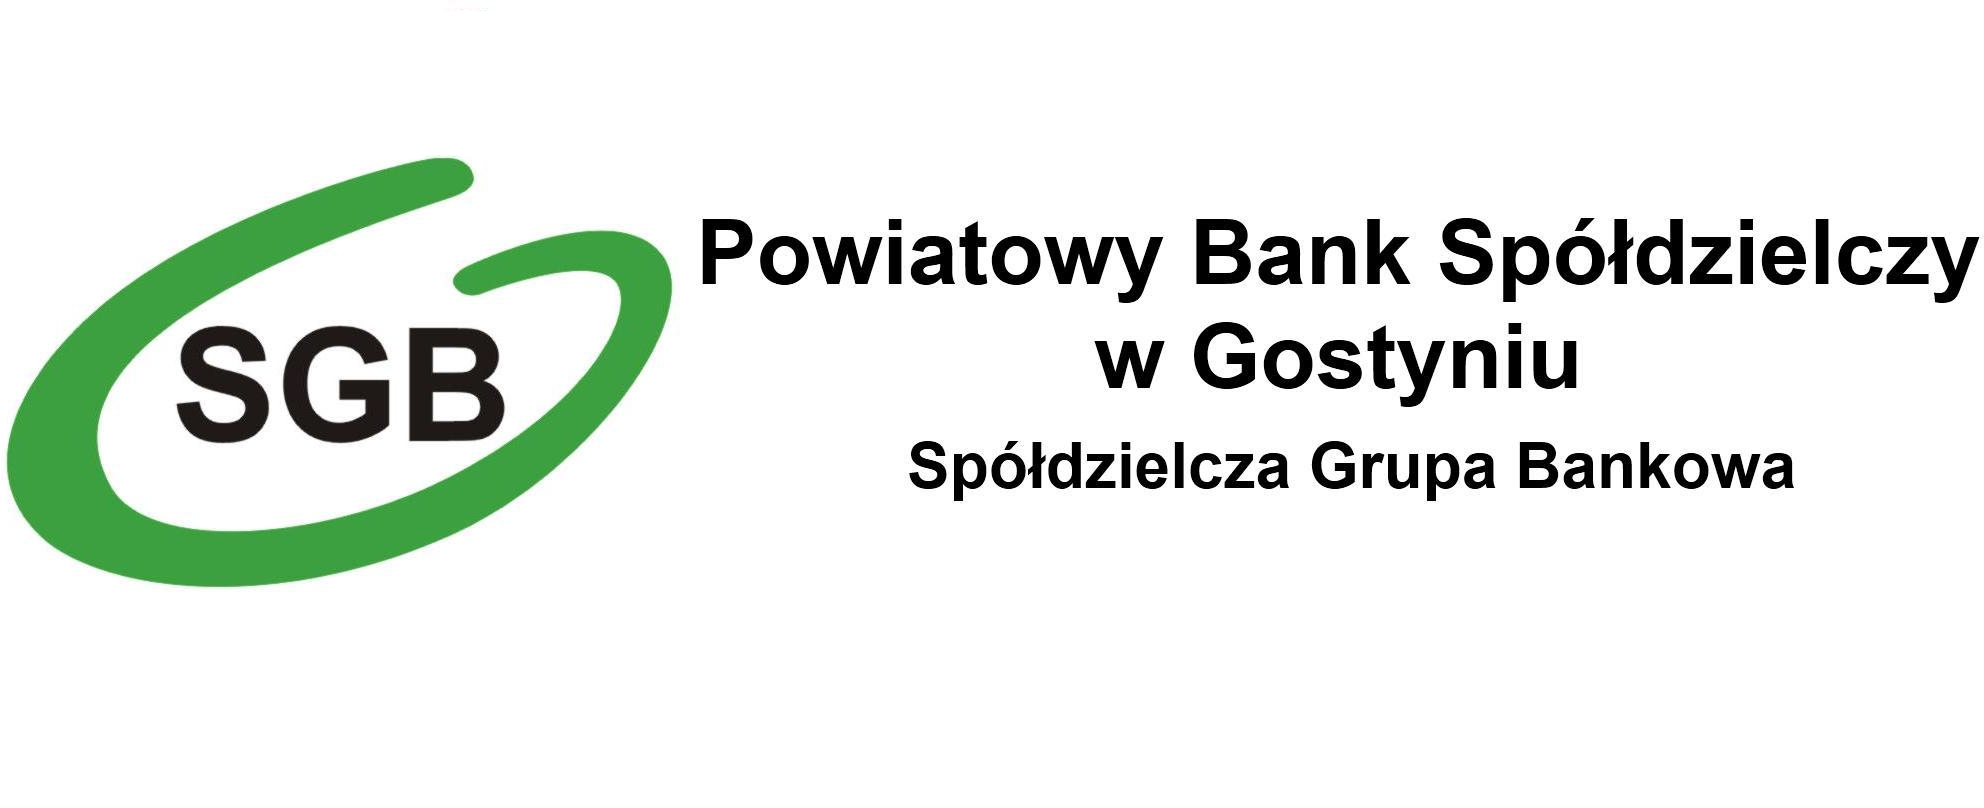 Podziękowania - Powiatowy Bank Spółdzielczy w Gostyniu